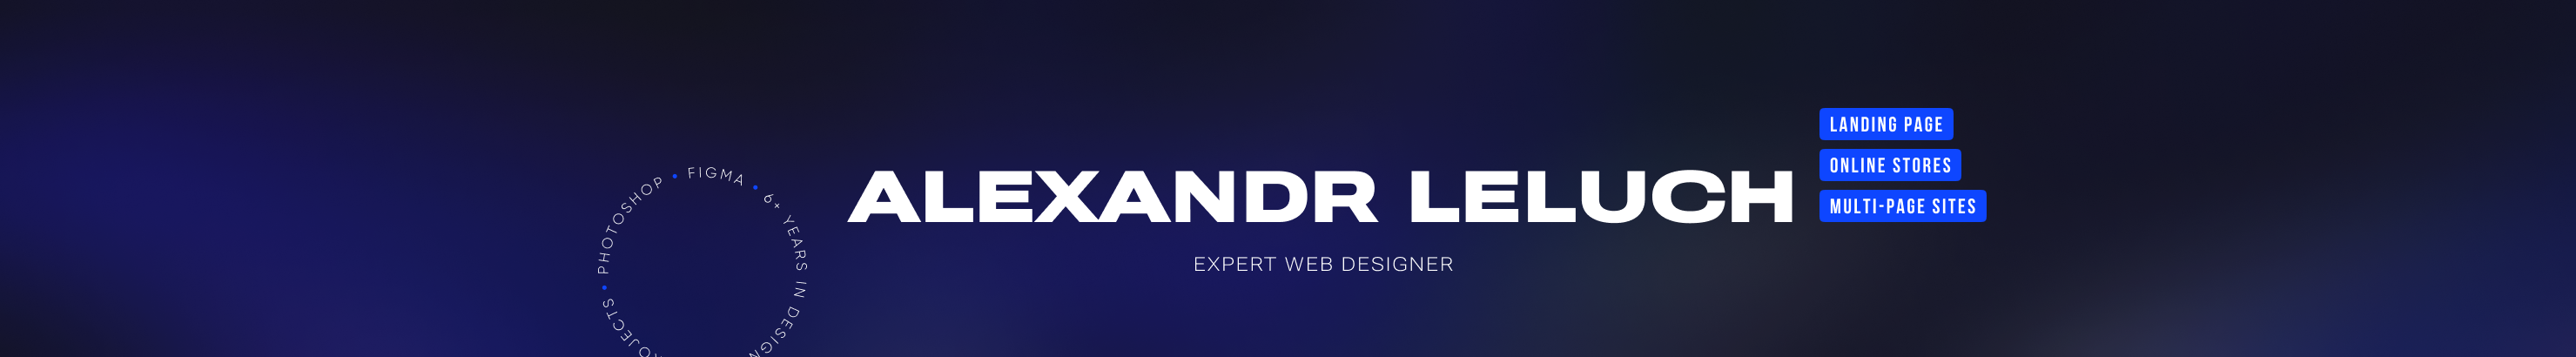 Banner de perfil de Alexandr Leluch